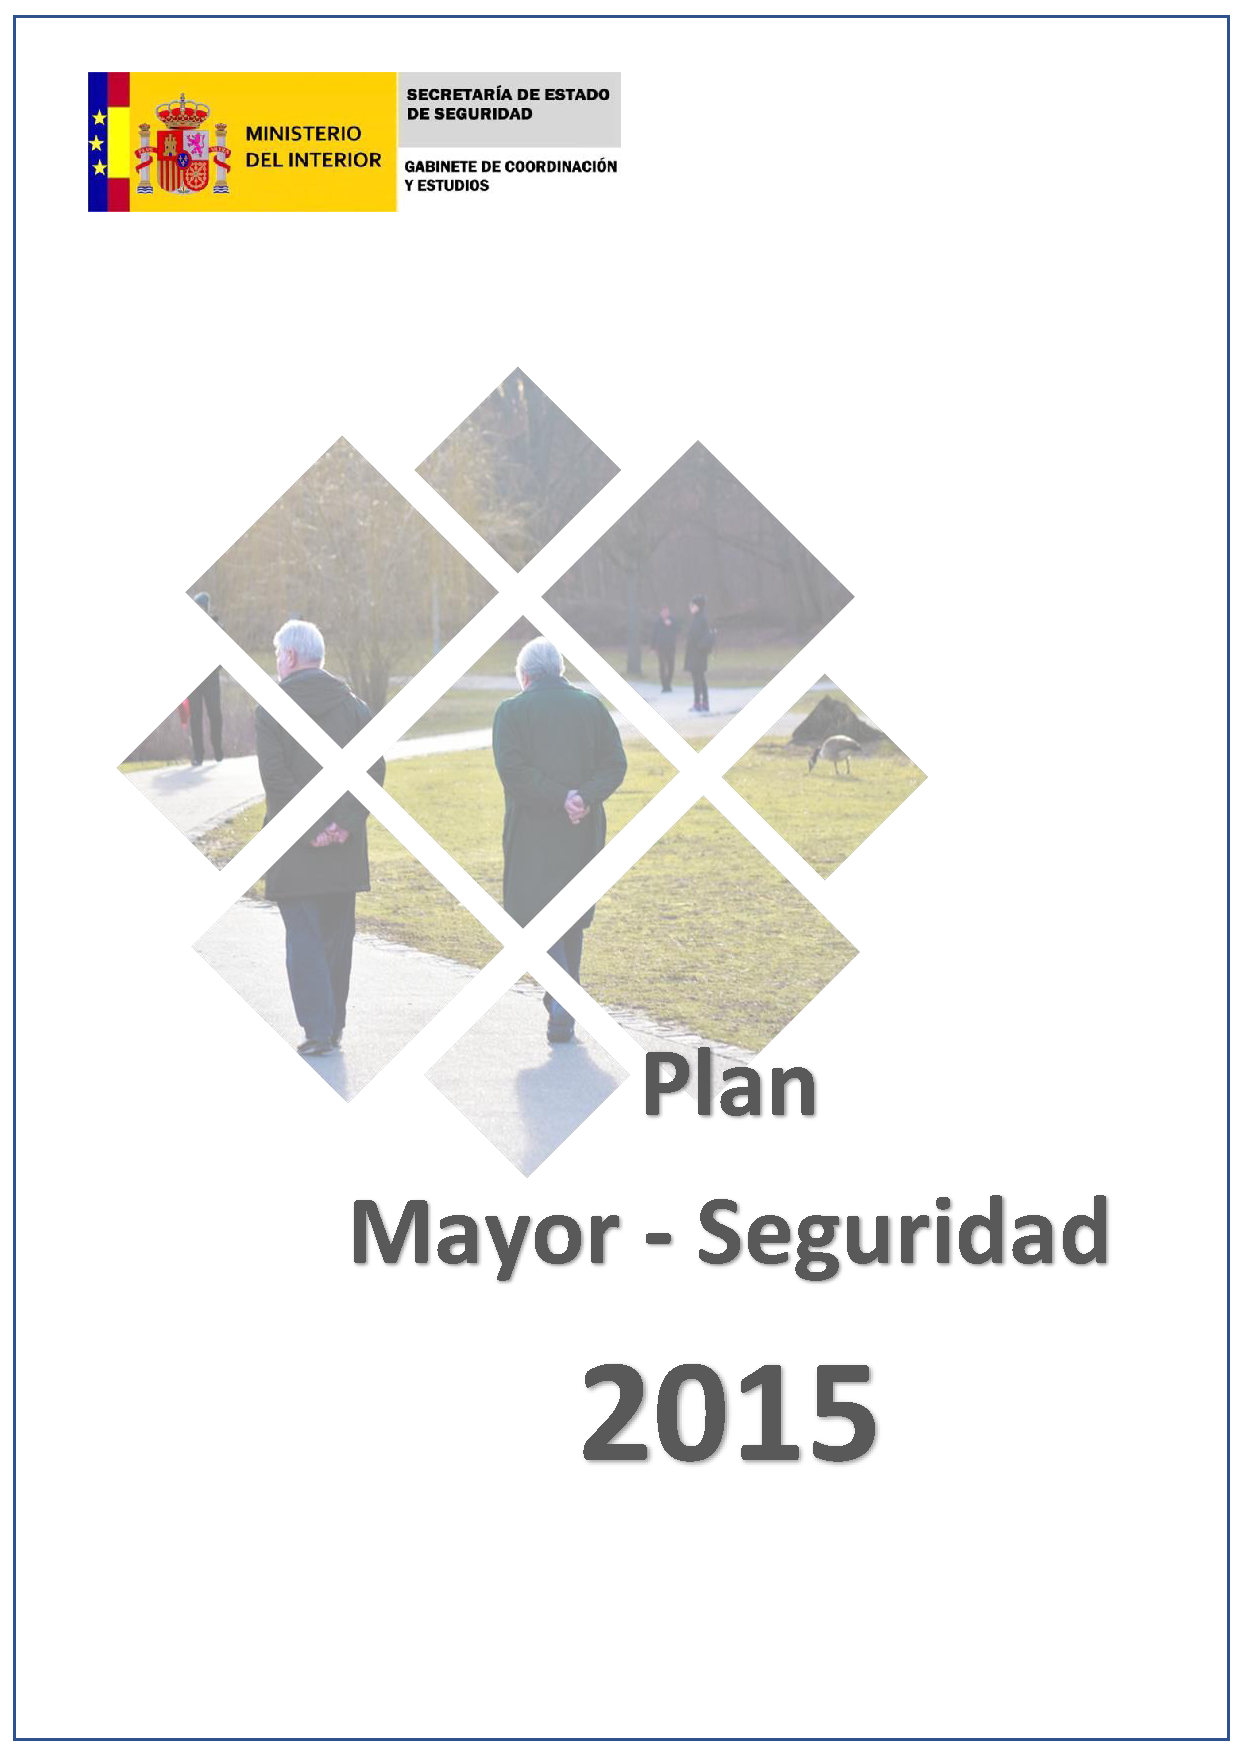 Balance 2015 - Major Security Plan